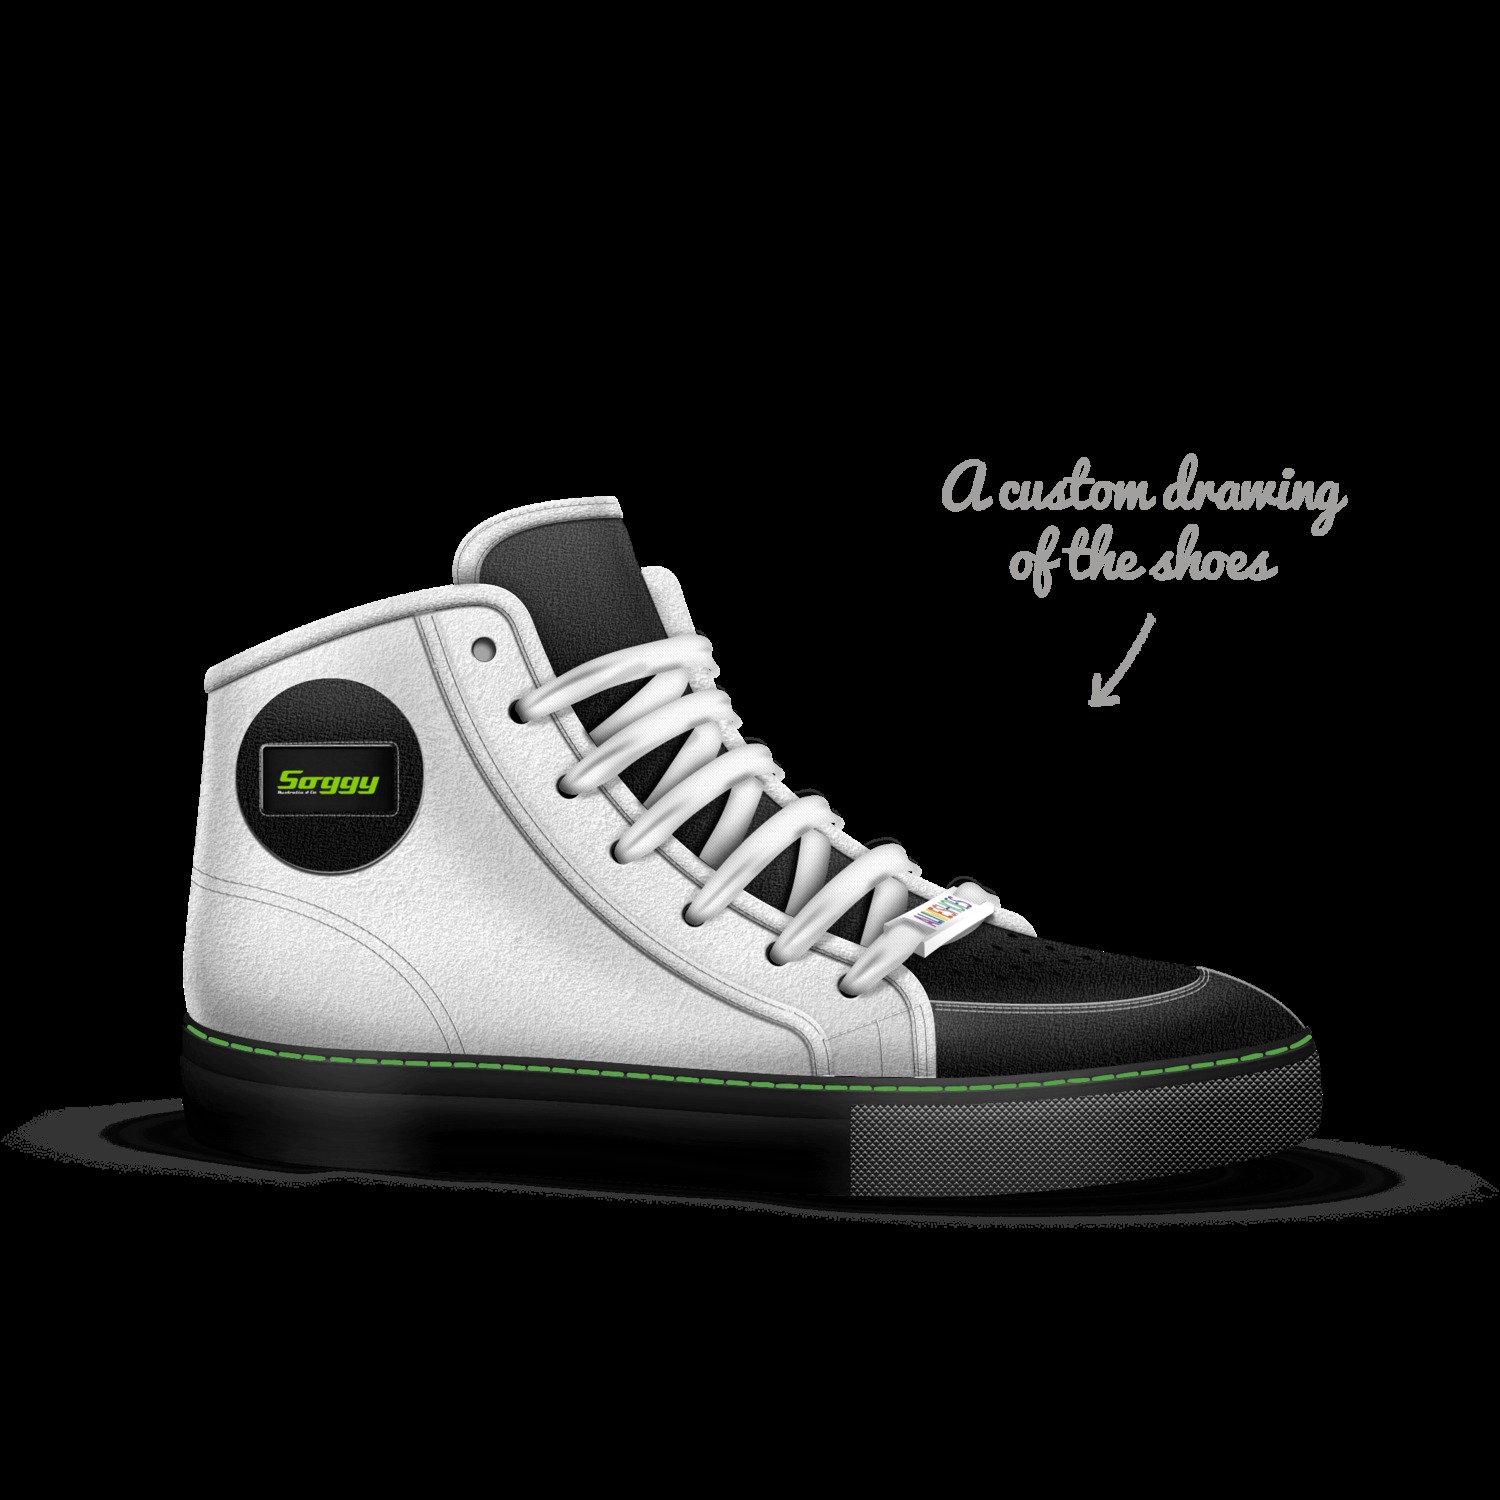 No. 1ne | A Custom Shoe concept by 